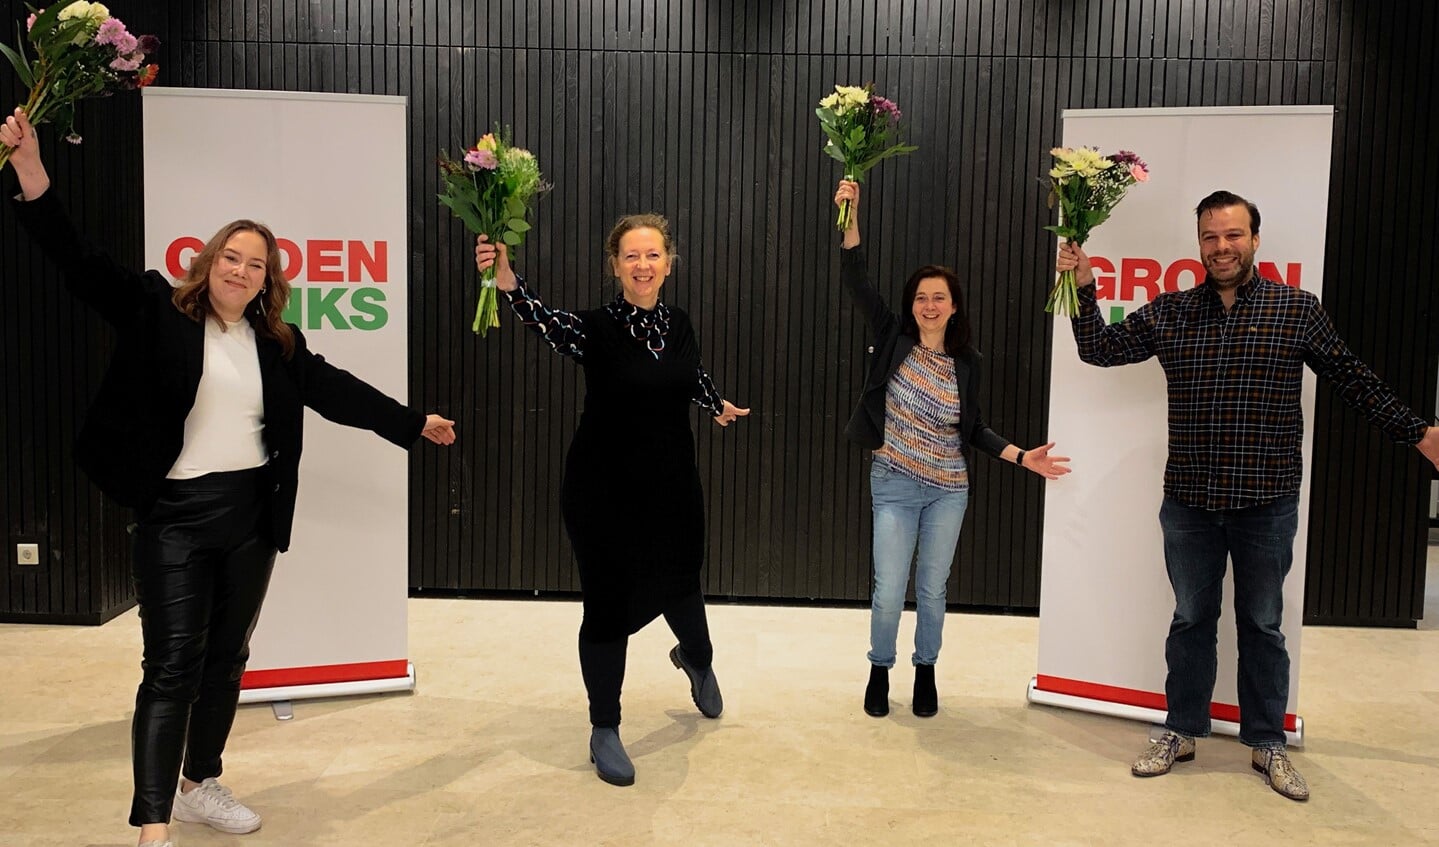 De kandidaten van GroenLinks: V.l.n.r. Anna Robin van Gestel, Krista Wessel, Kristiane Schmidt, Roel Kessels. 